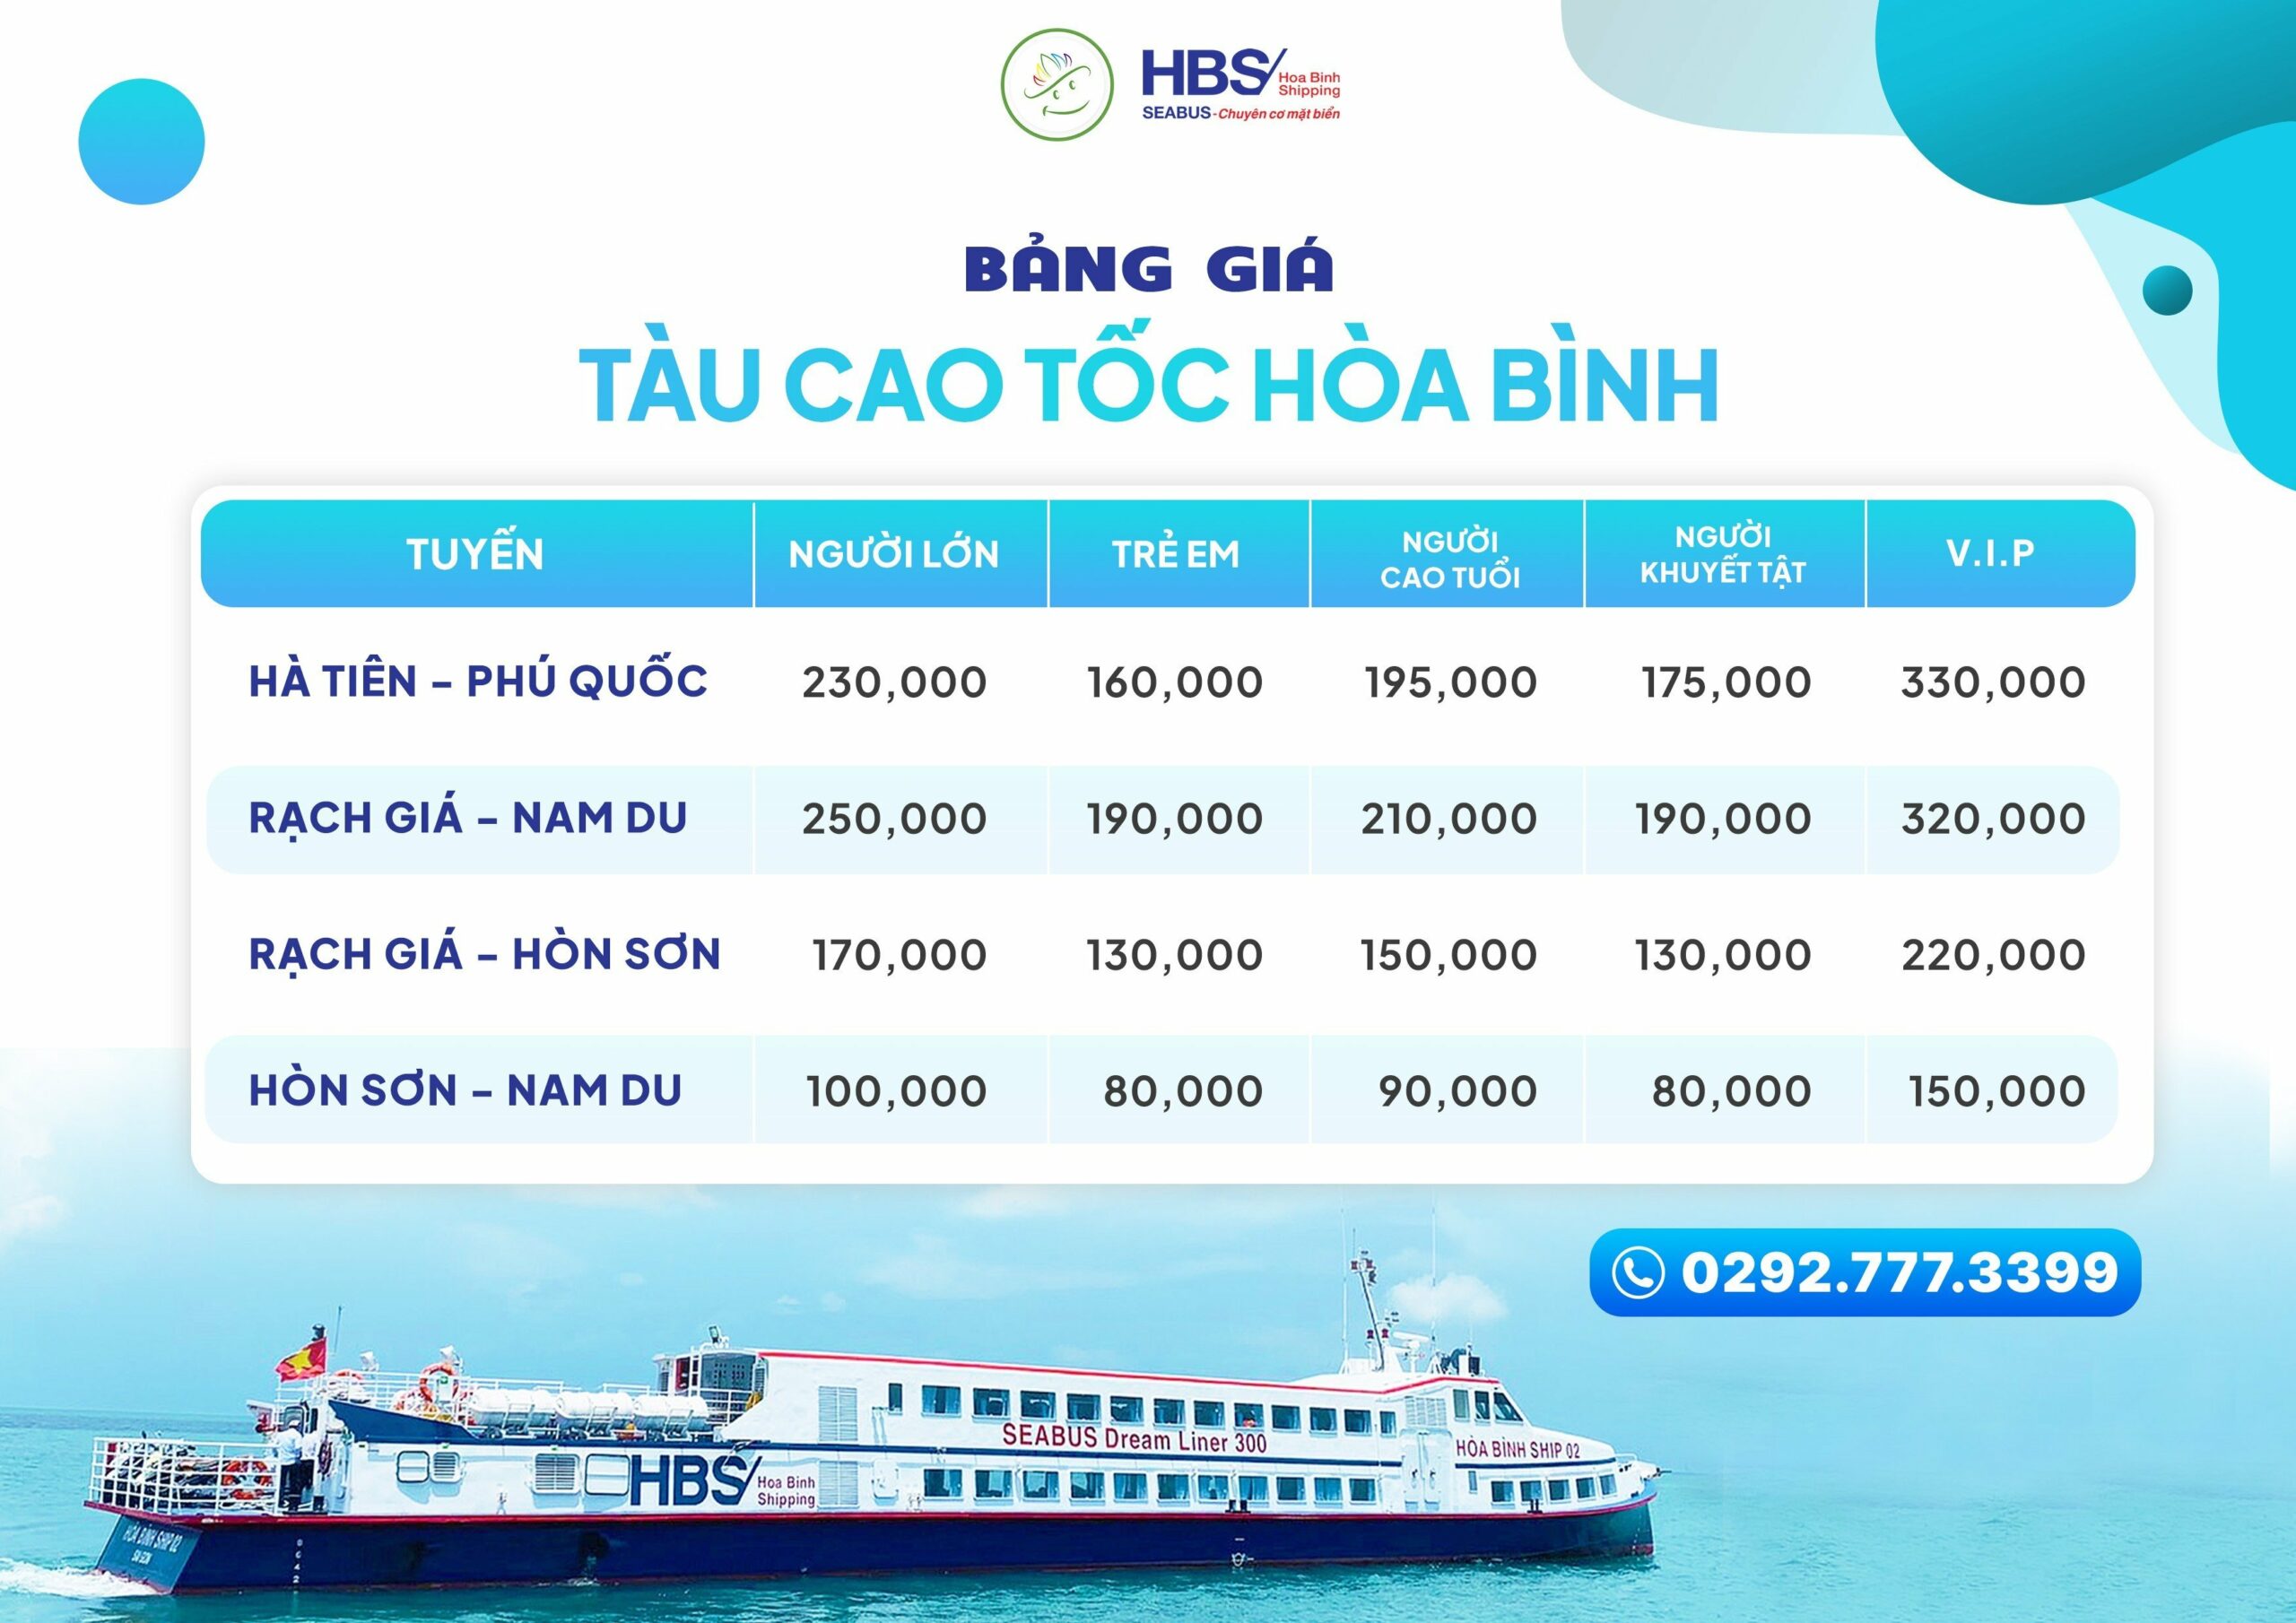 Bảng giá vé tàu cao tốc Hà Tiên Phú Quốc - Hòa Bình Express